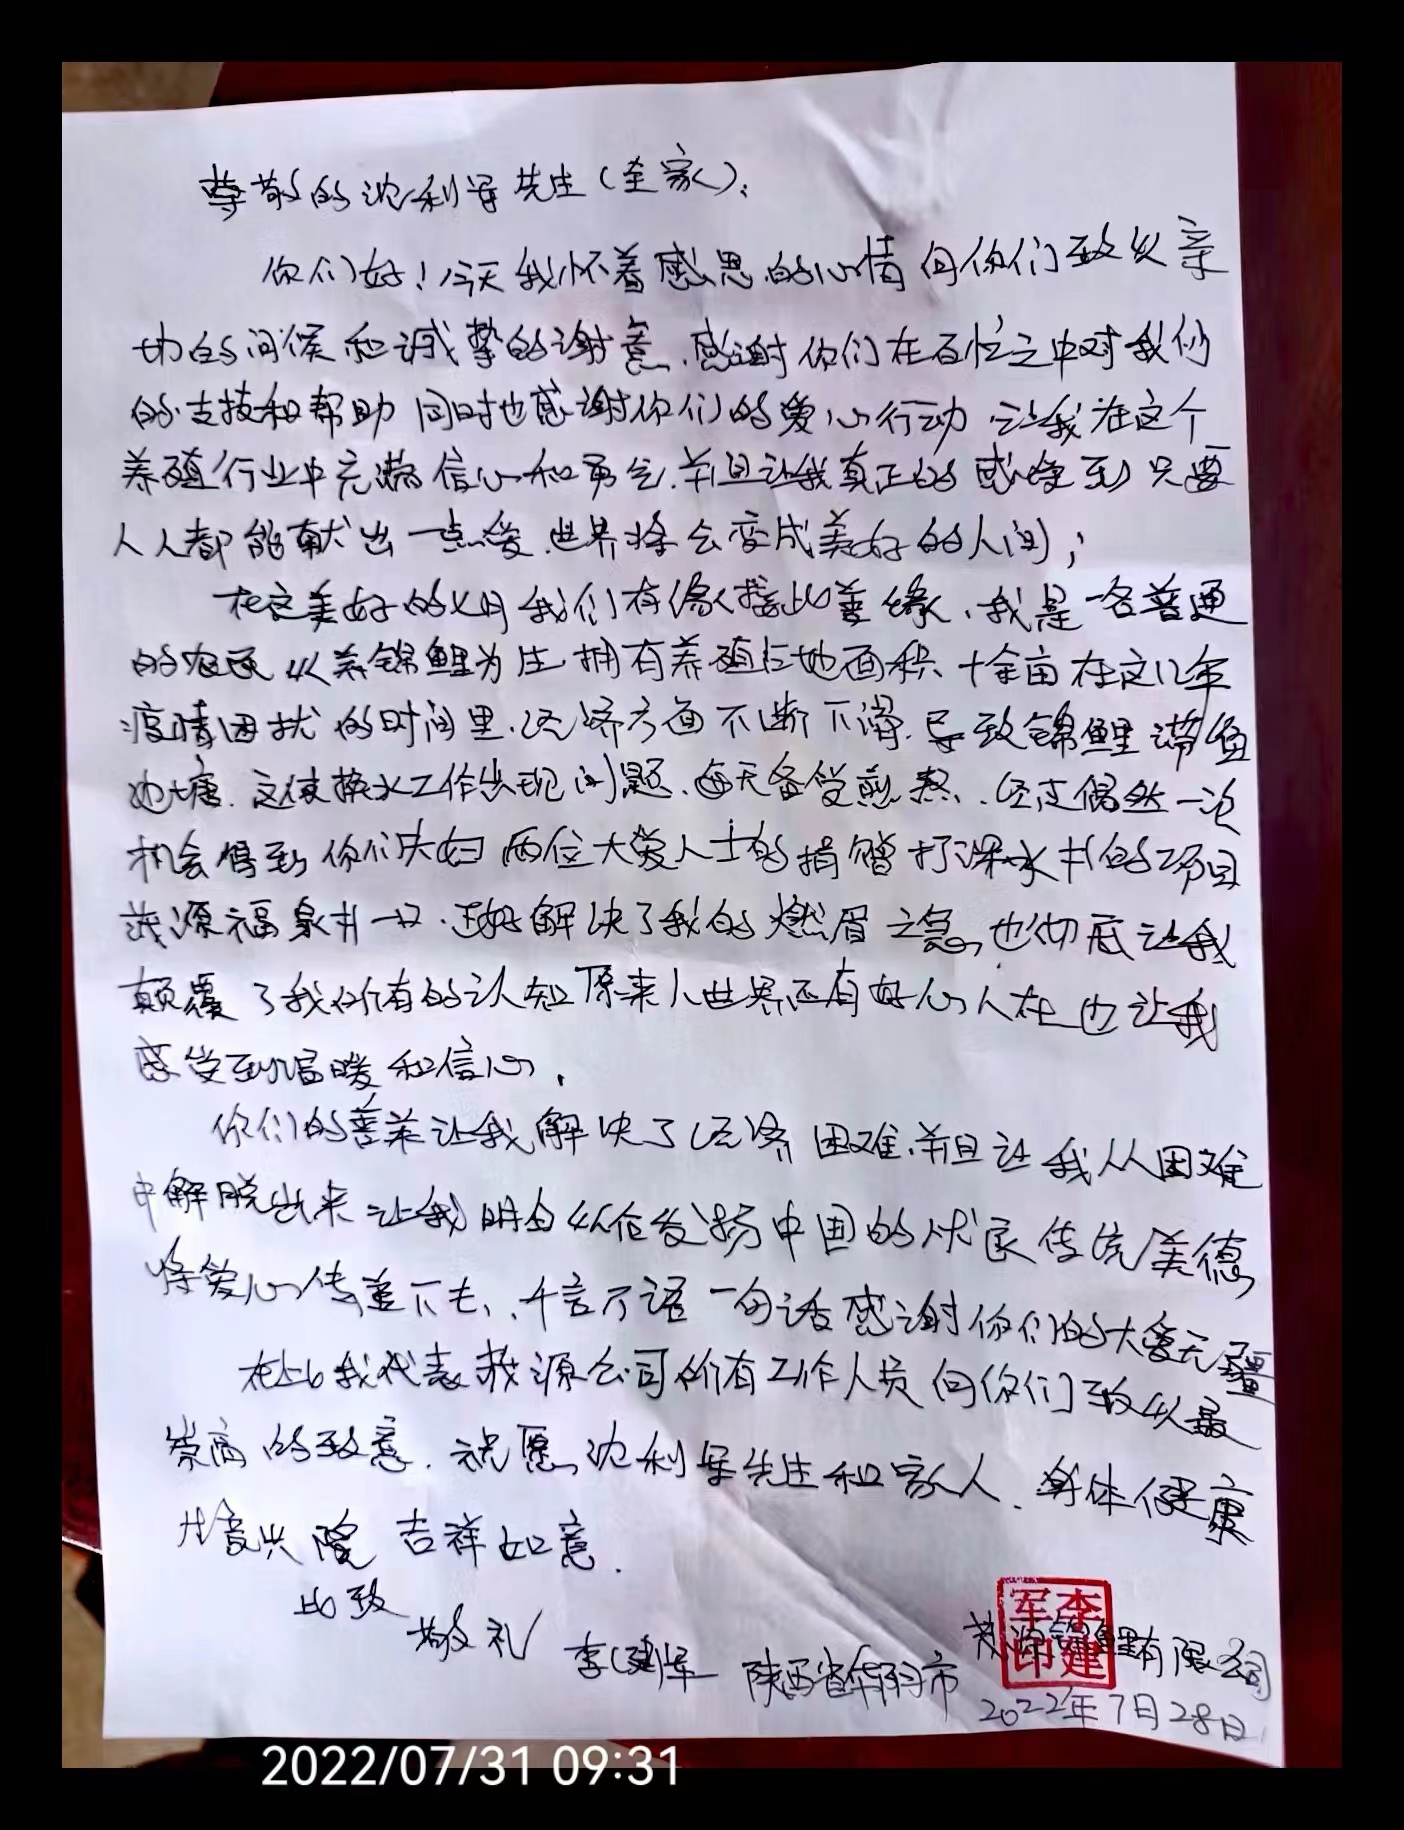 宁波佳源电子有限公司收到1封来自陕西的感恩信